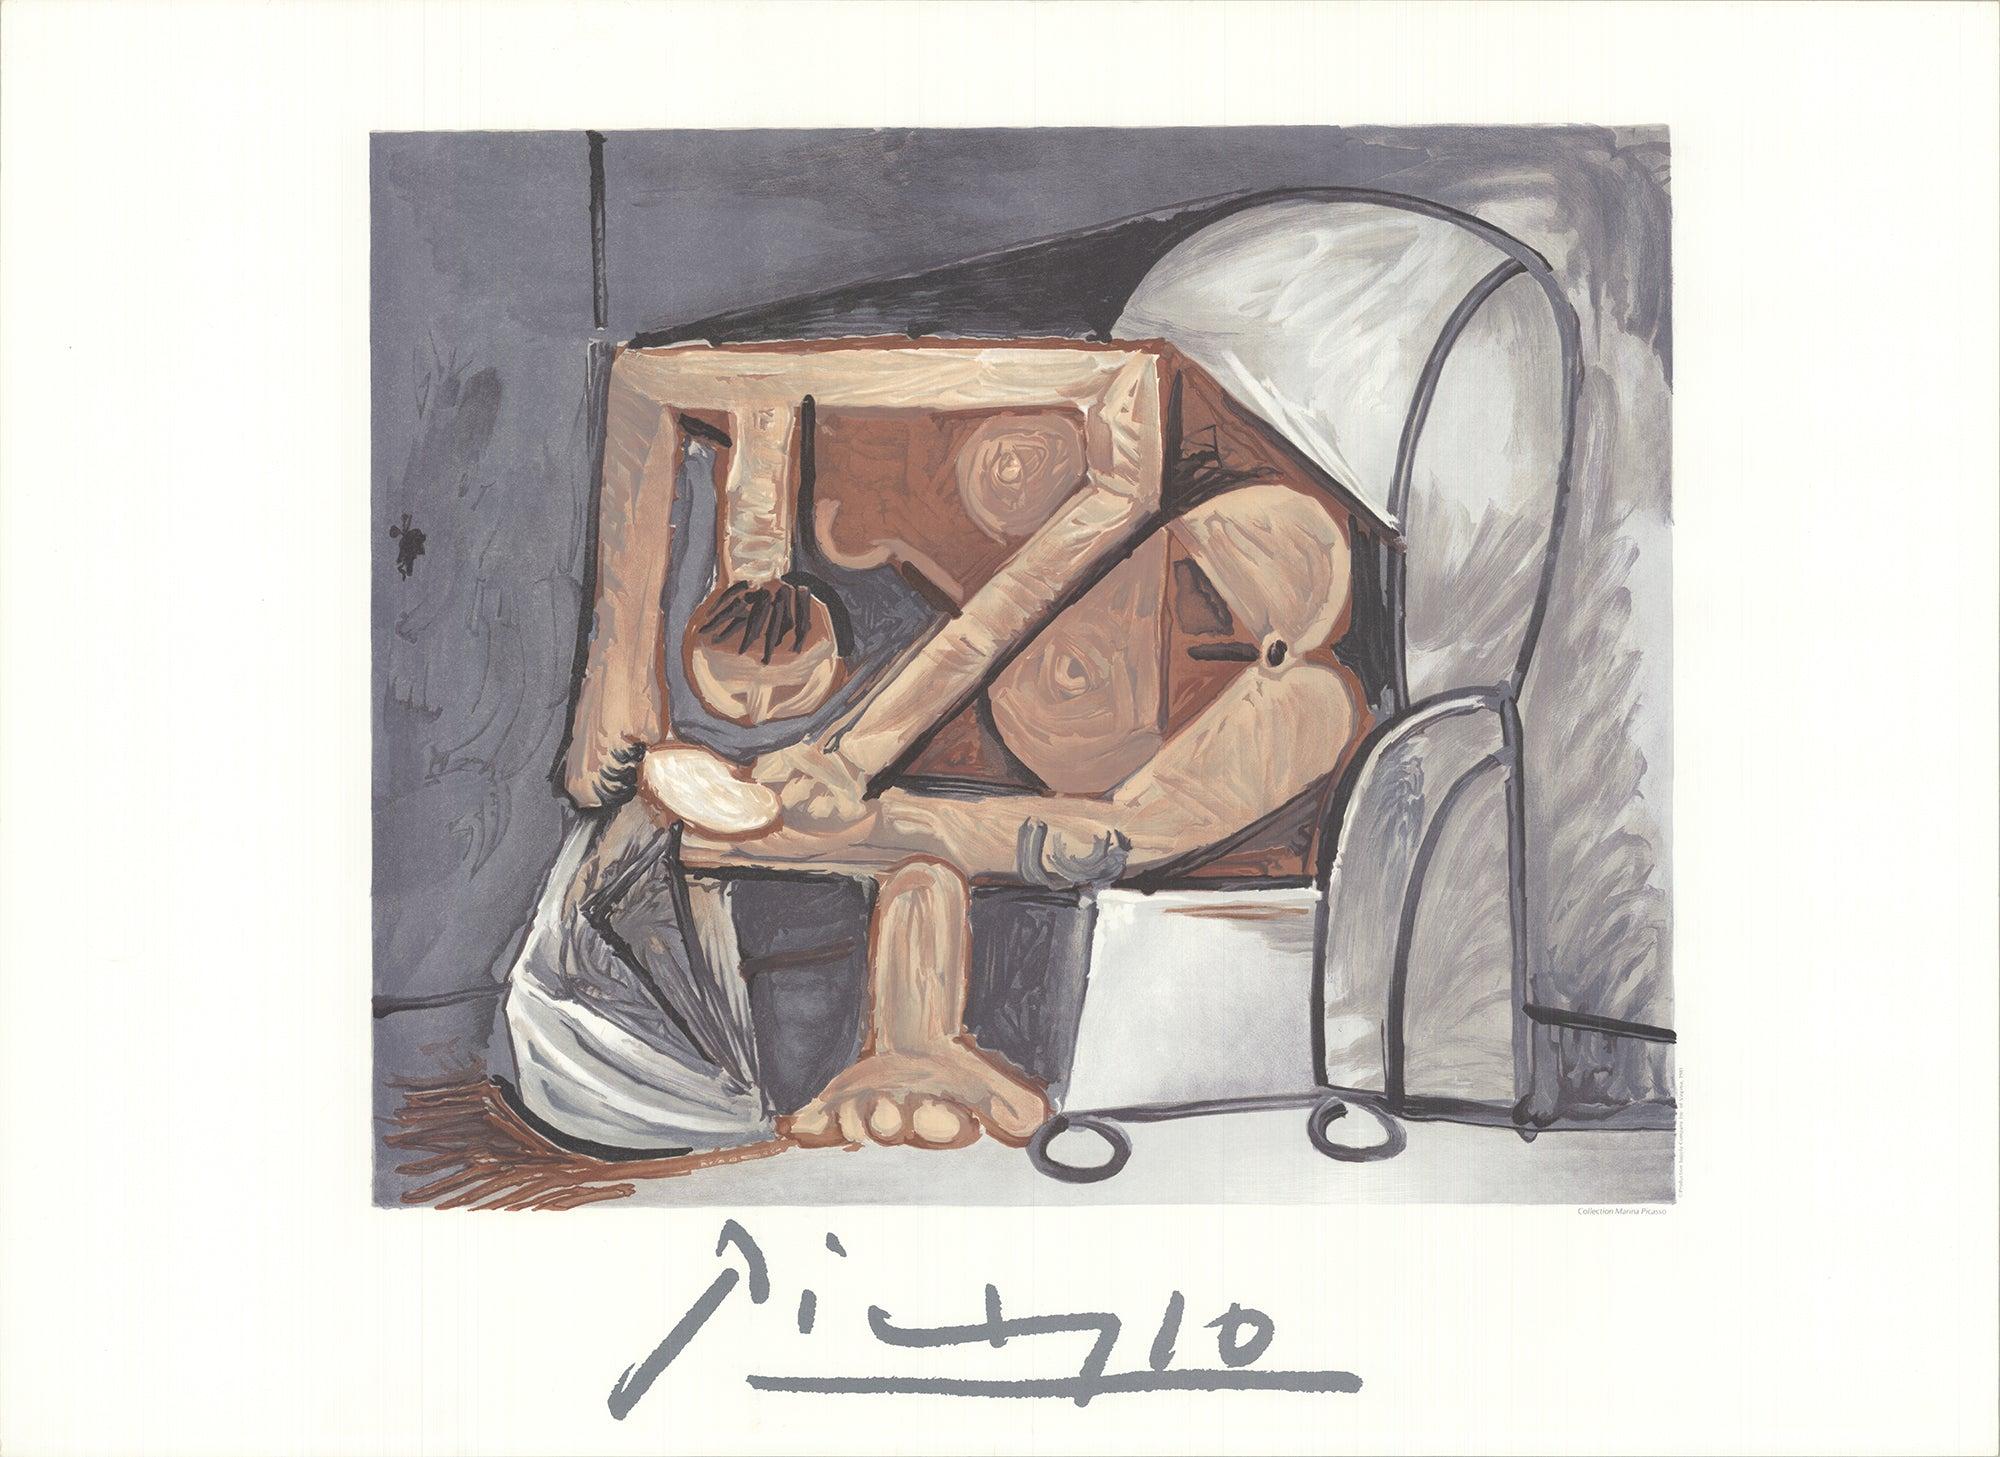 Papierformat: 22 x 30 Zoll (55,88 x 76,2 cm)
Bildgröße: 16,25 x 19,5 Zoll (41,275 x 49,53 cm)
Gerahmt: Nein
Zustand: A-: Fast neuwertig, sehr leichte Gebrauchsspuren

Zusätzliche Details: Reproduktion eines Werks von Pablo Picasso in limitierter